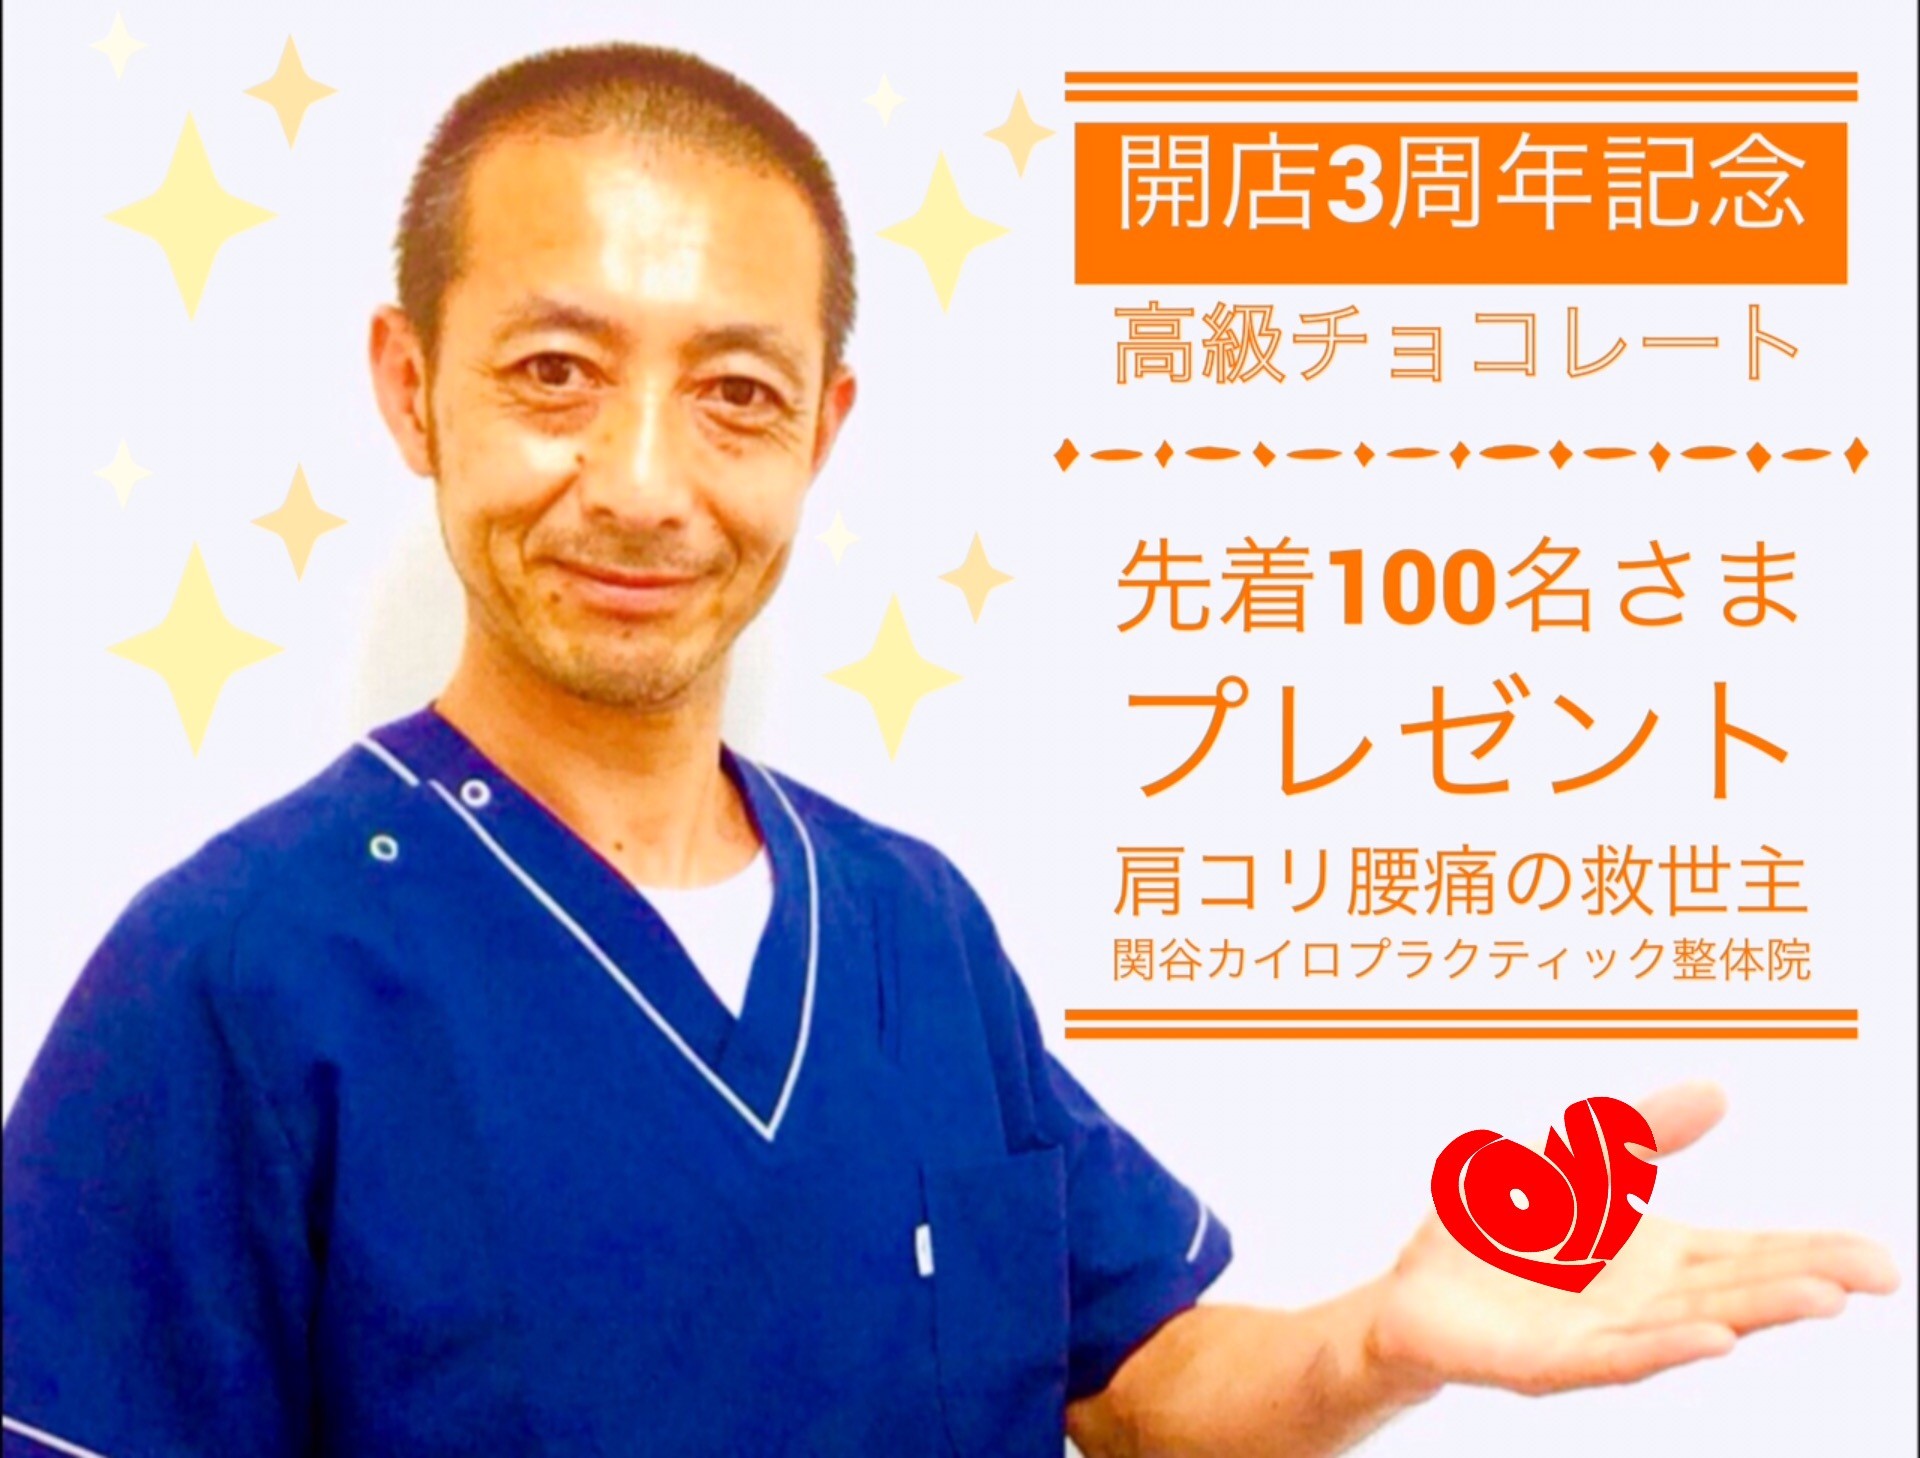 3周年記念プレゼントキャンペーン開催 東神奈川の健康ブログ